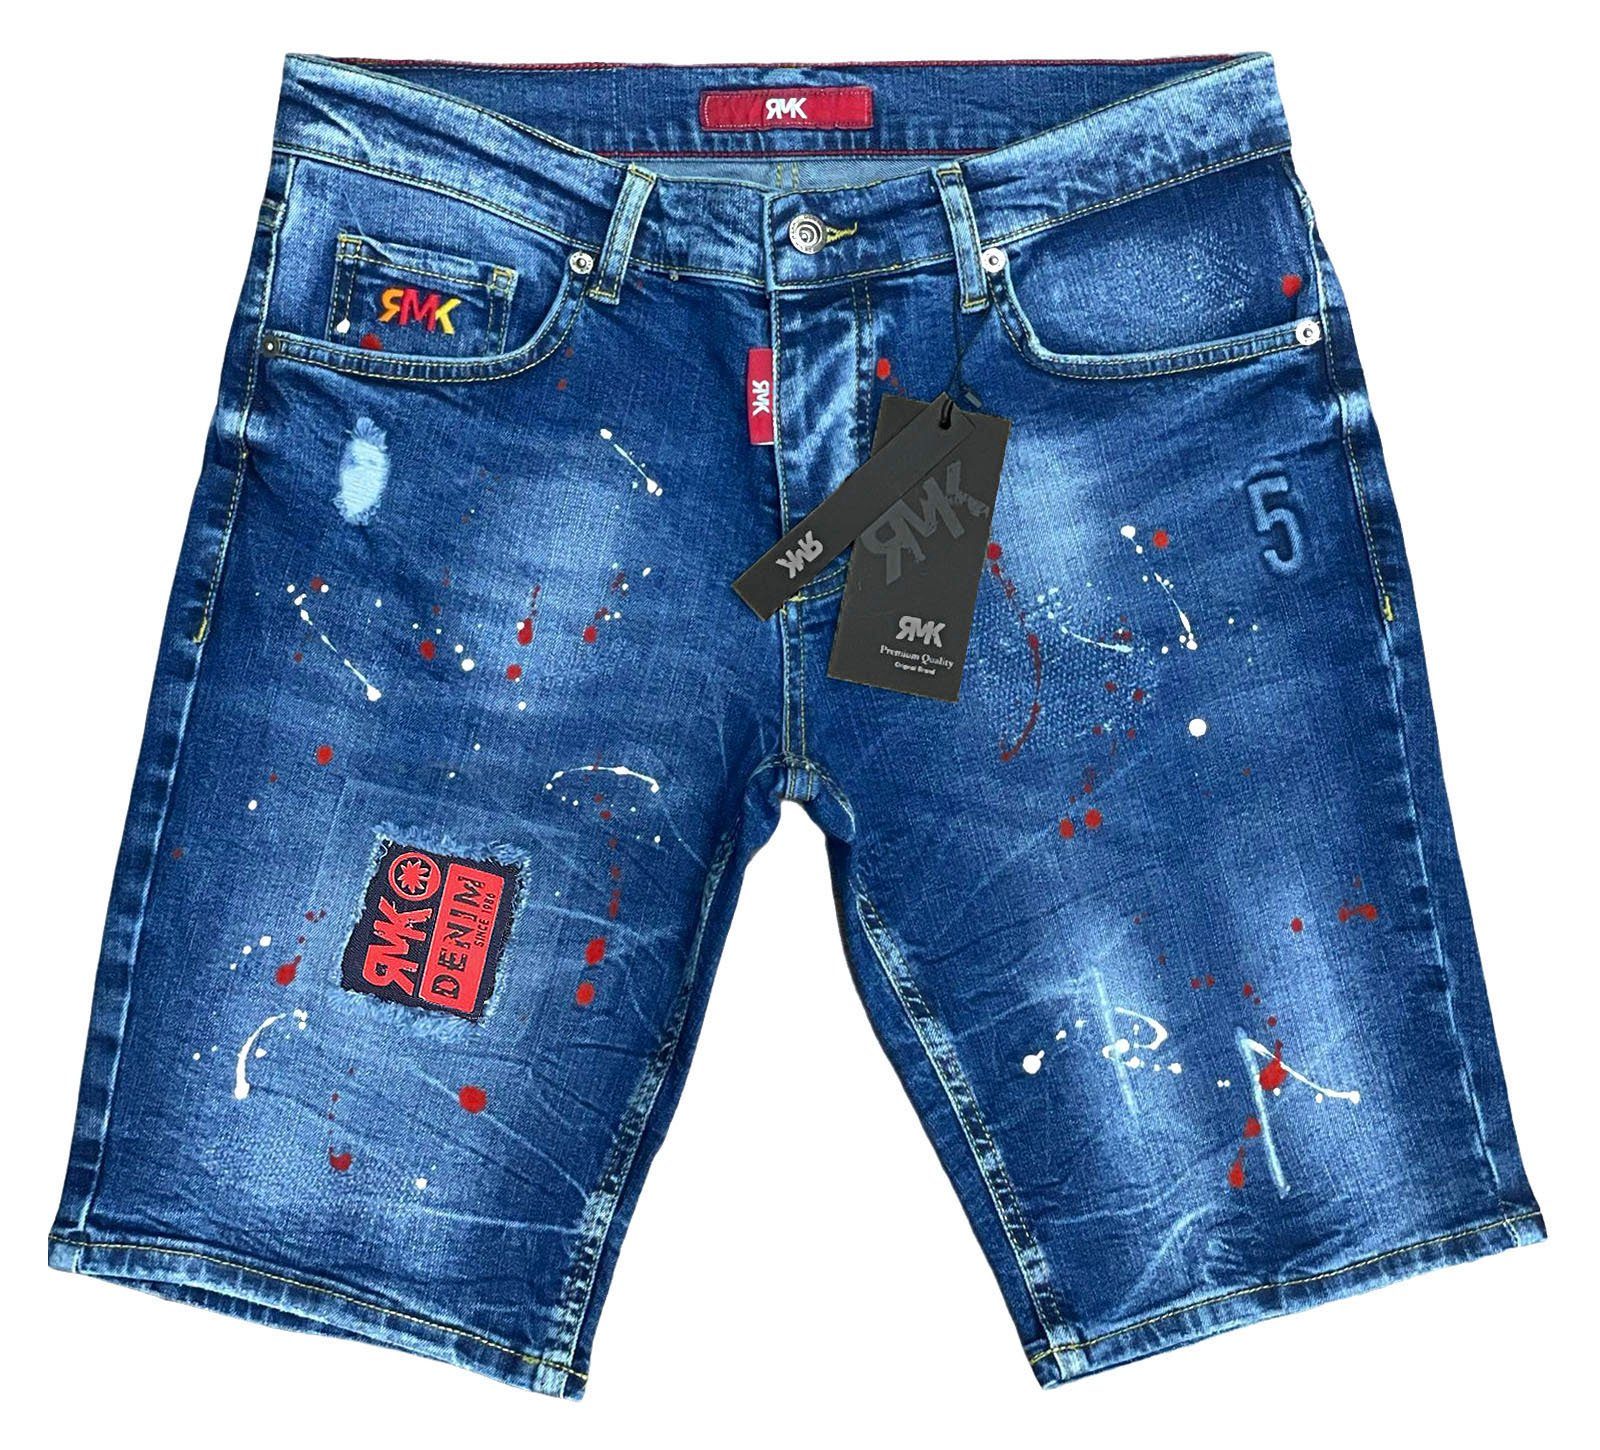 RMK Jeansshorts 5 Pocket Jeans short Blue mit Farbspritzern